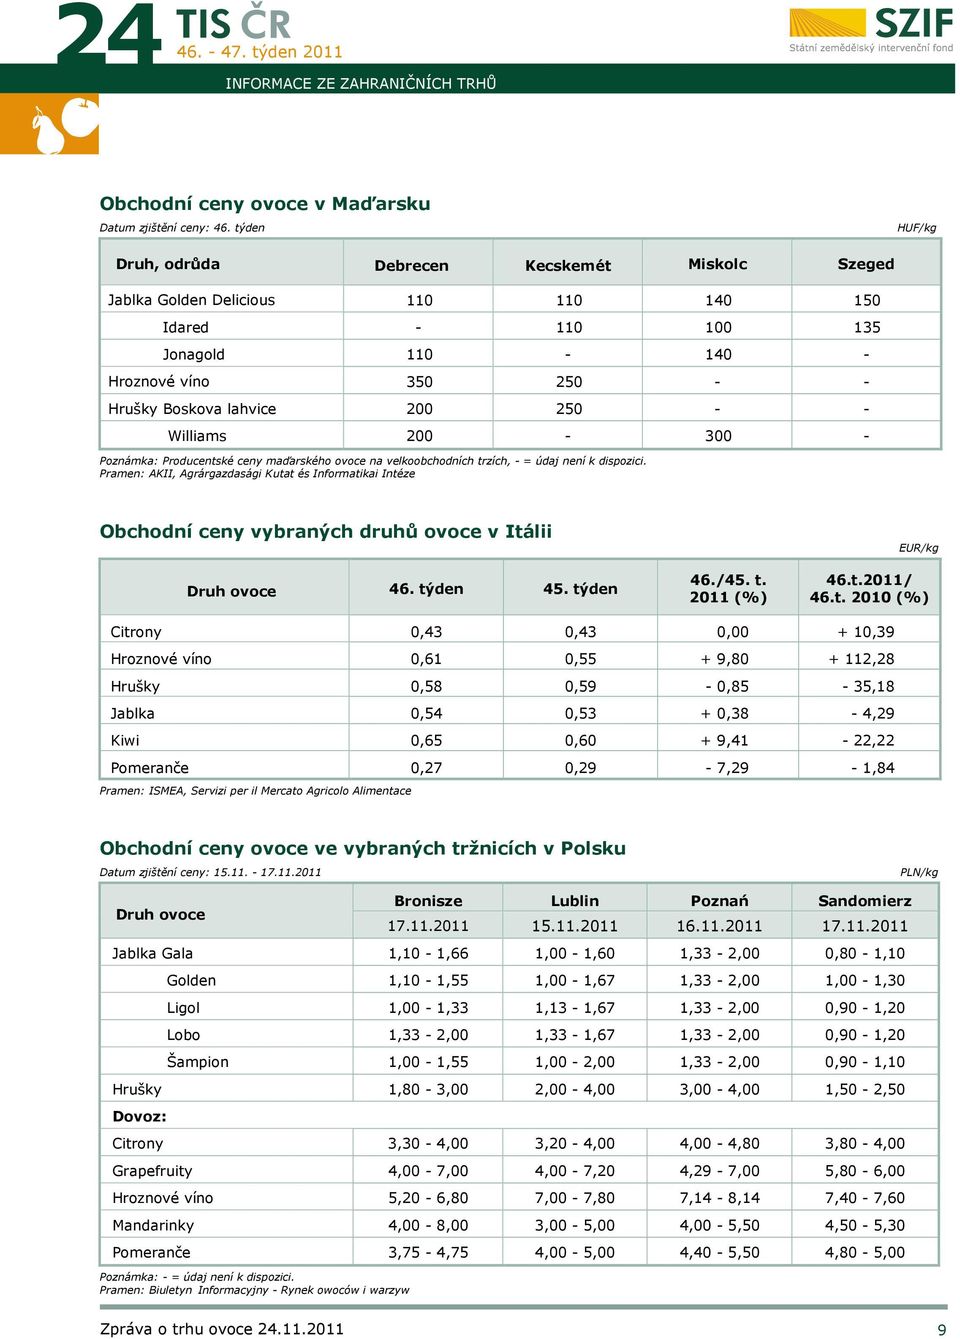 dispozici. Pramen: AKII, Agrárgazdasági Kutat és Informatikai Intéze Obchodní ceny vybraných druhů ovoce v Itálii Druh ovoce týden 45. týden /45. t. 2011 (%) EUR/kg t.2011/ t.